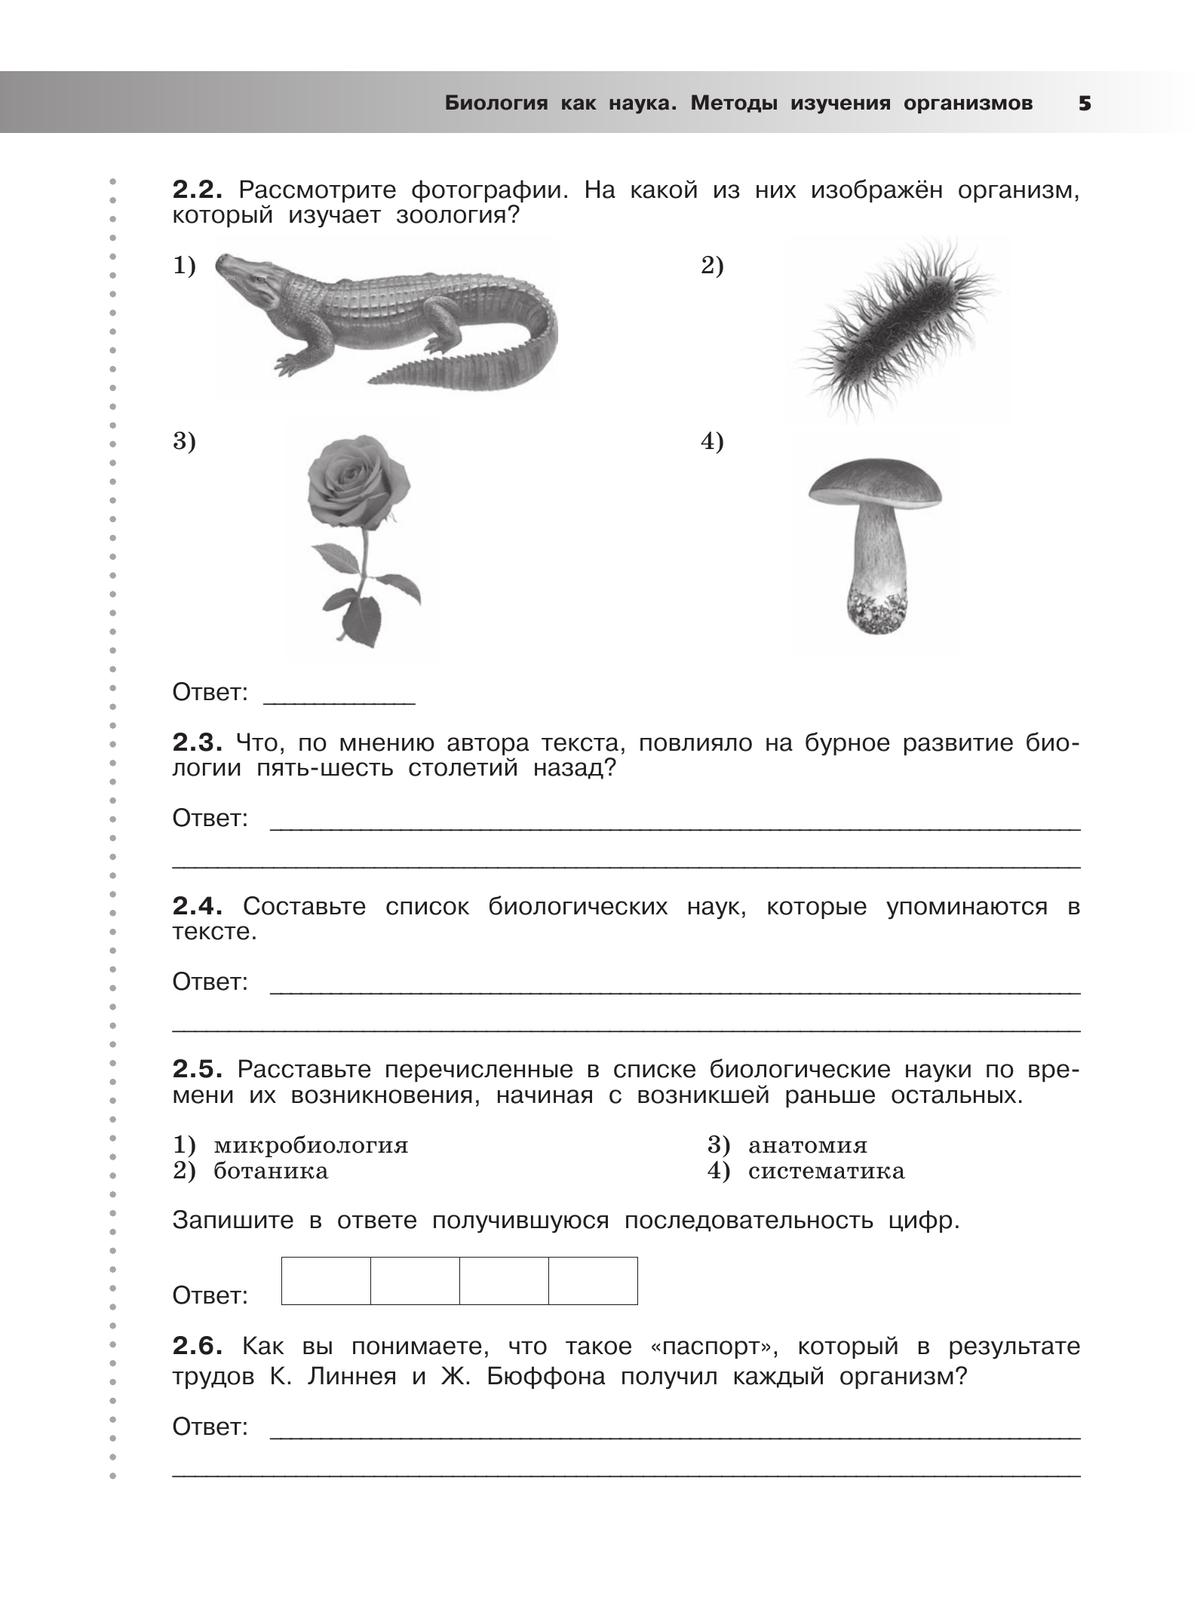 Всероссийские проверочные работы. Биология. Рабочая тетрадь. 5 класс 5